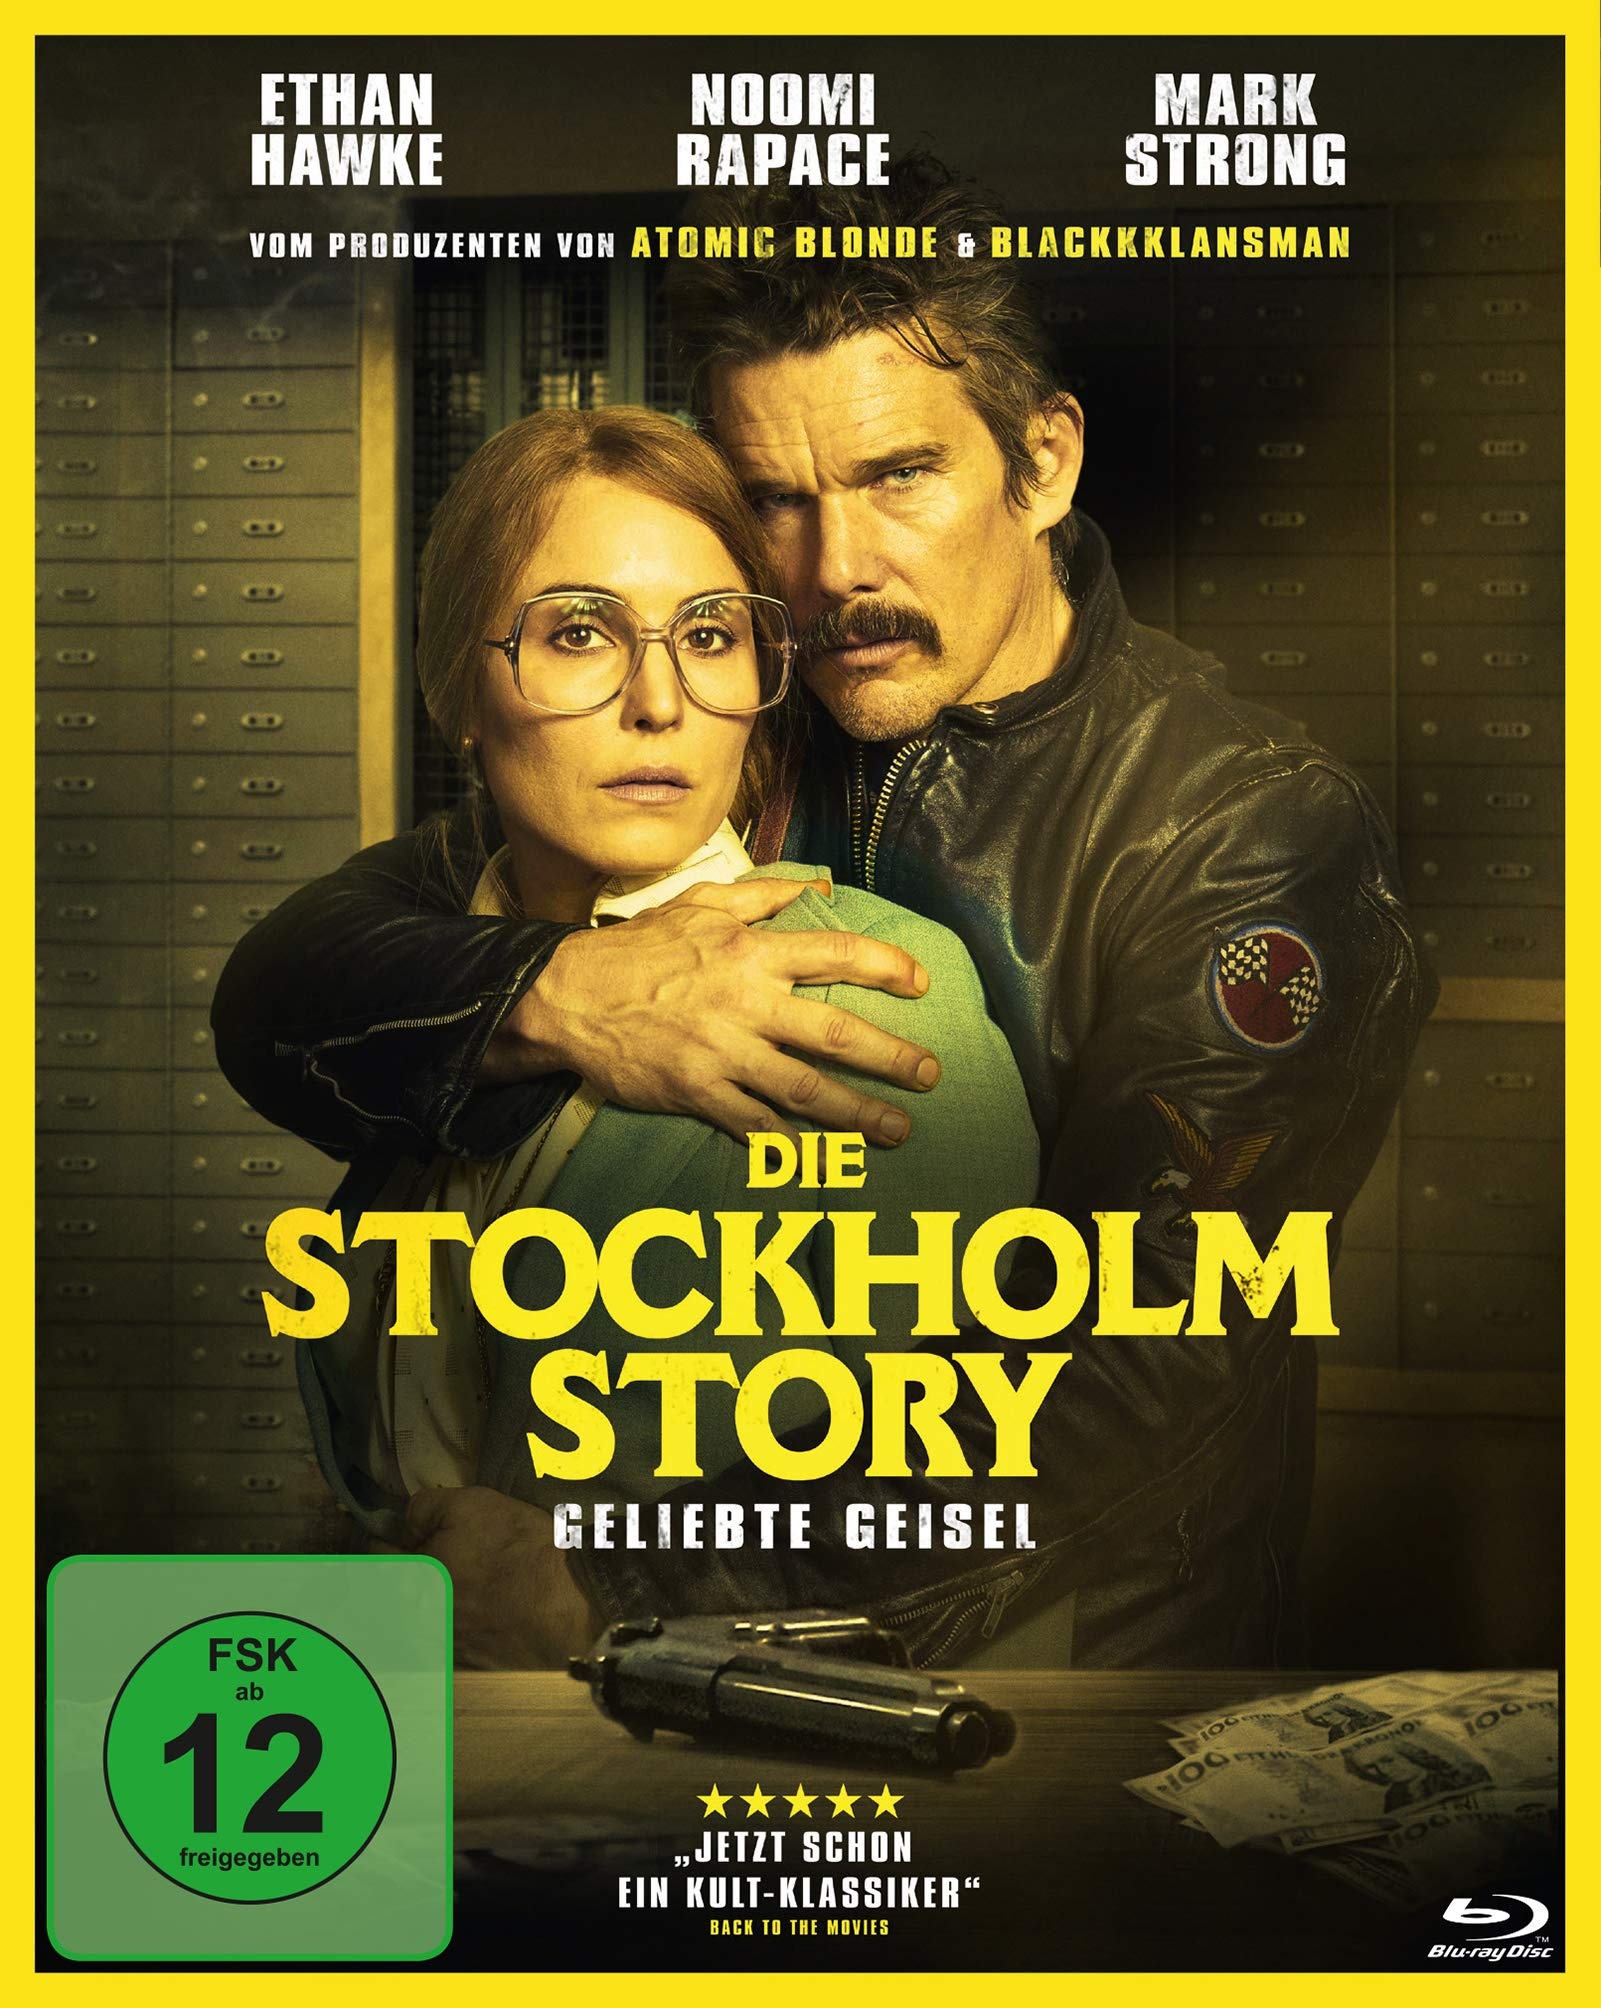 Die Stockholm Story - Geliebte Geisel [Blu-ray]